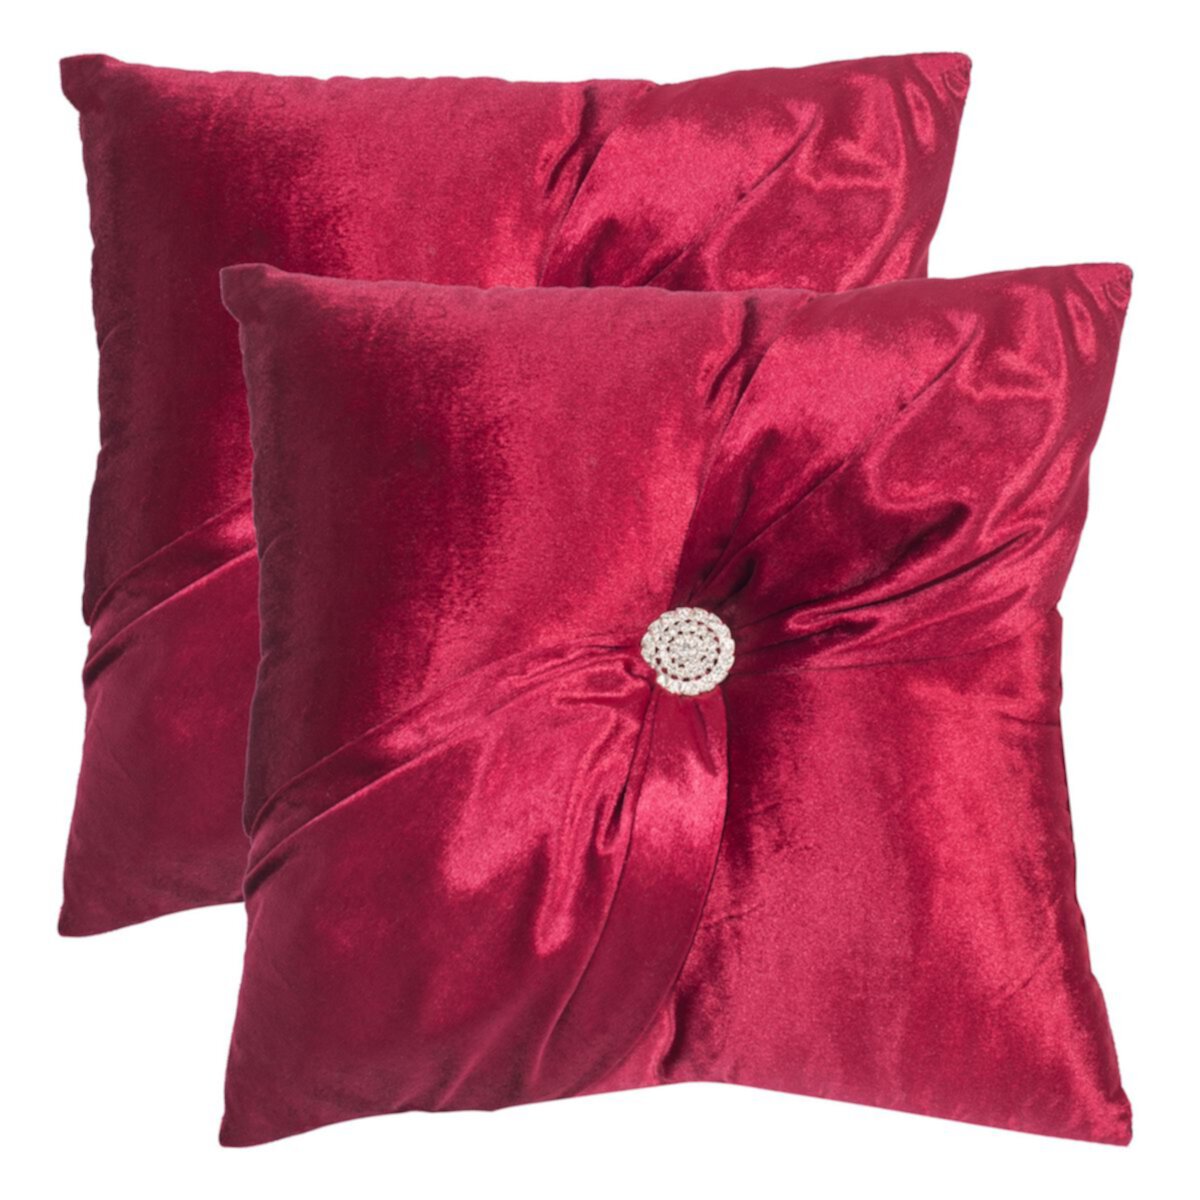 Купить Декоративные подушки Комплект из 2 декоративных подушек Safavieh Posh Safavieh, цвет